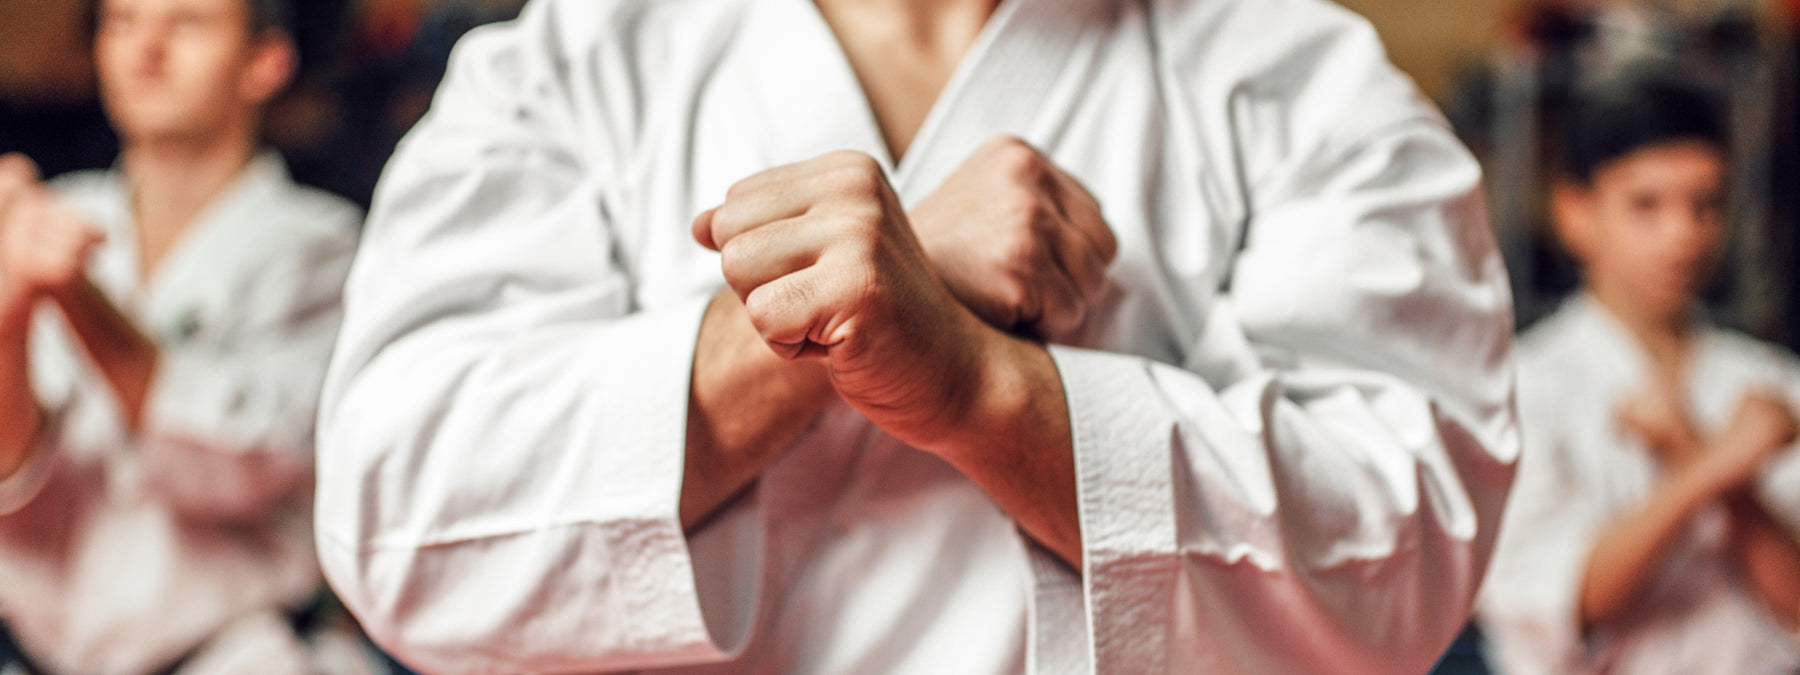 Five Tips for the Beginning Brazilian Jiu-Jitsu Practitioner